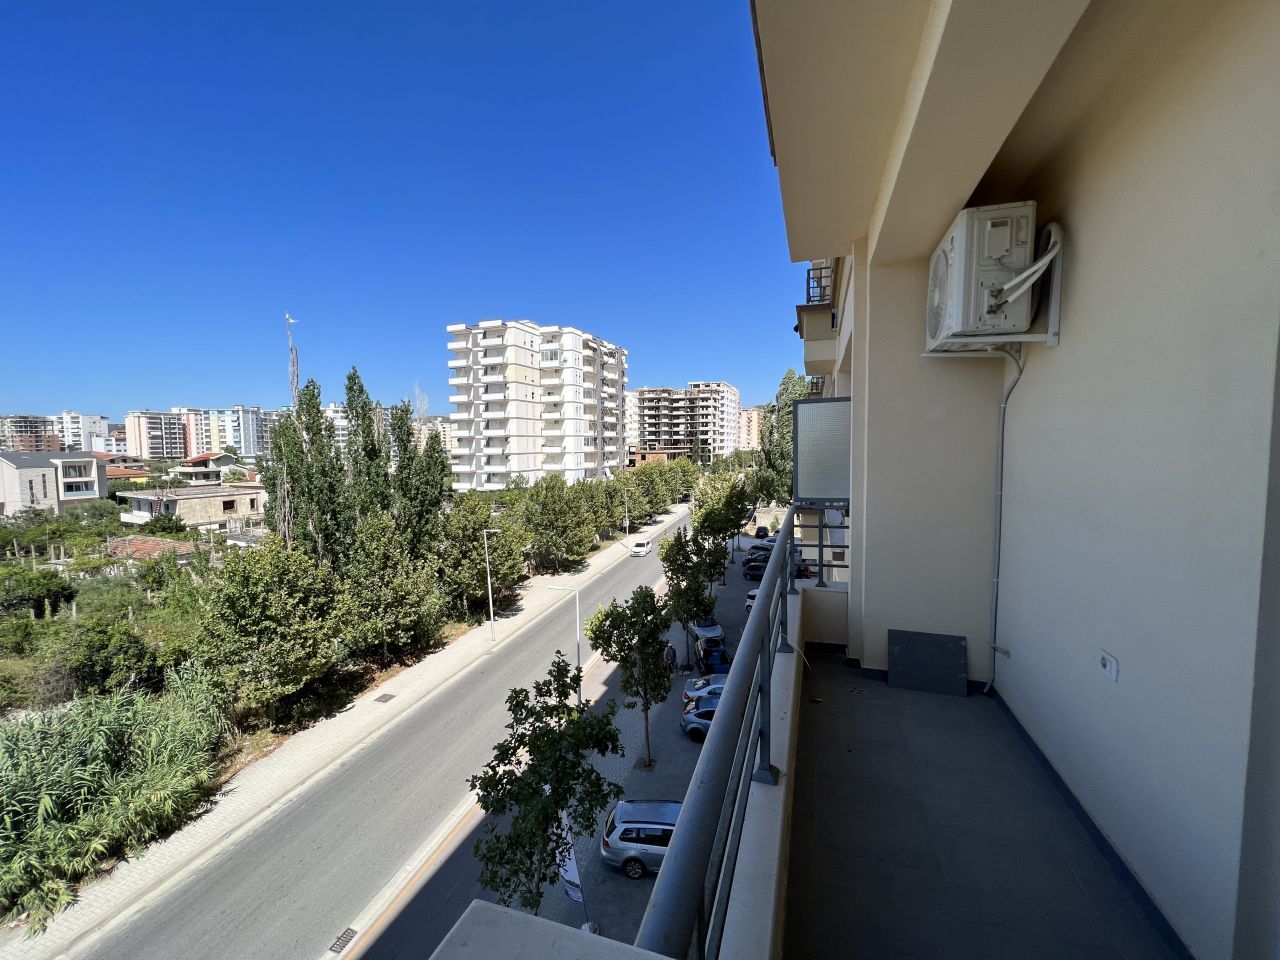 Apartament Per Shitje Ne Vlore Shqiperi, I Pozicionuar Ne Nje Zone Te Qete, Prane Plazhit